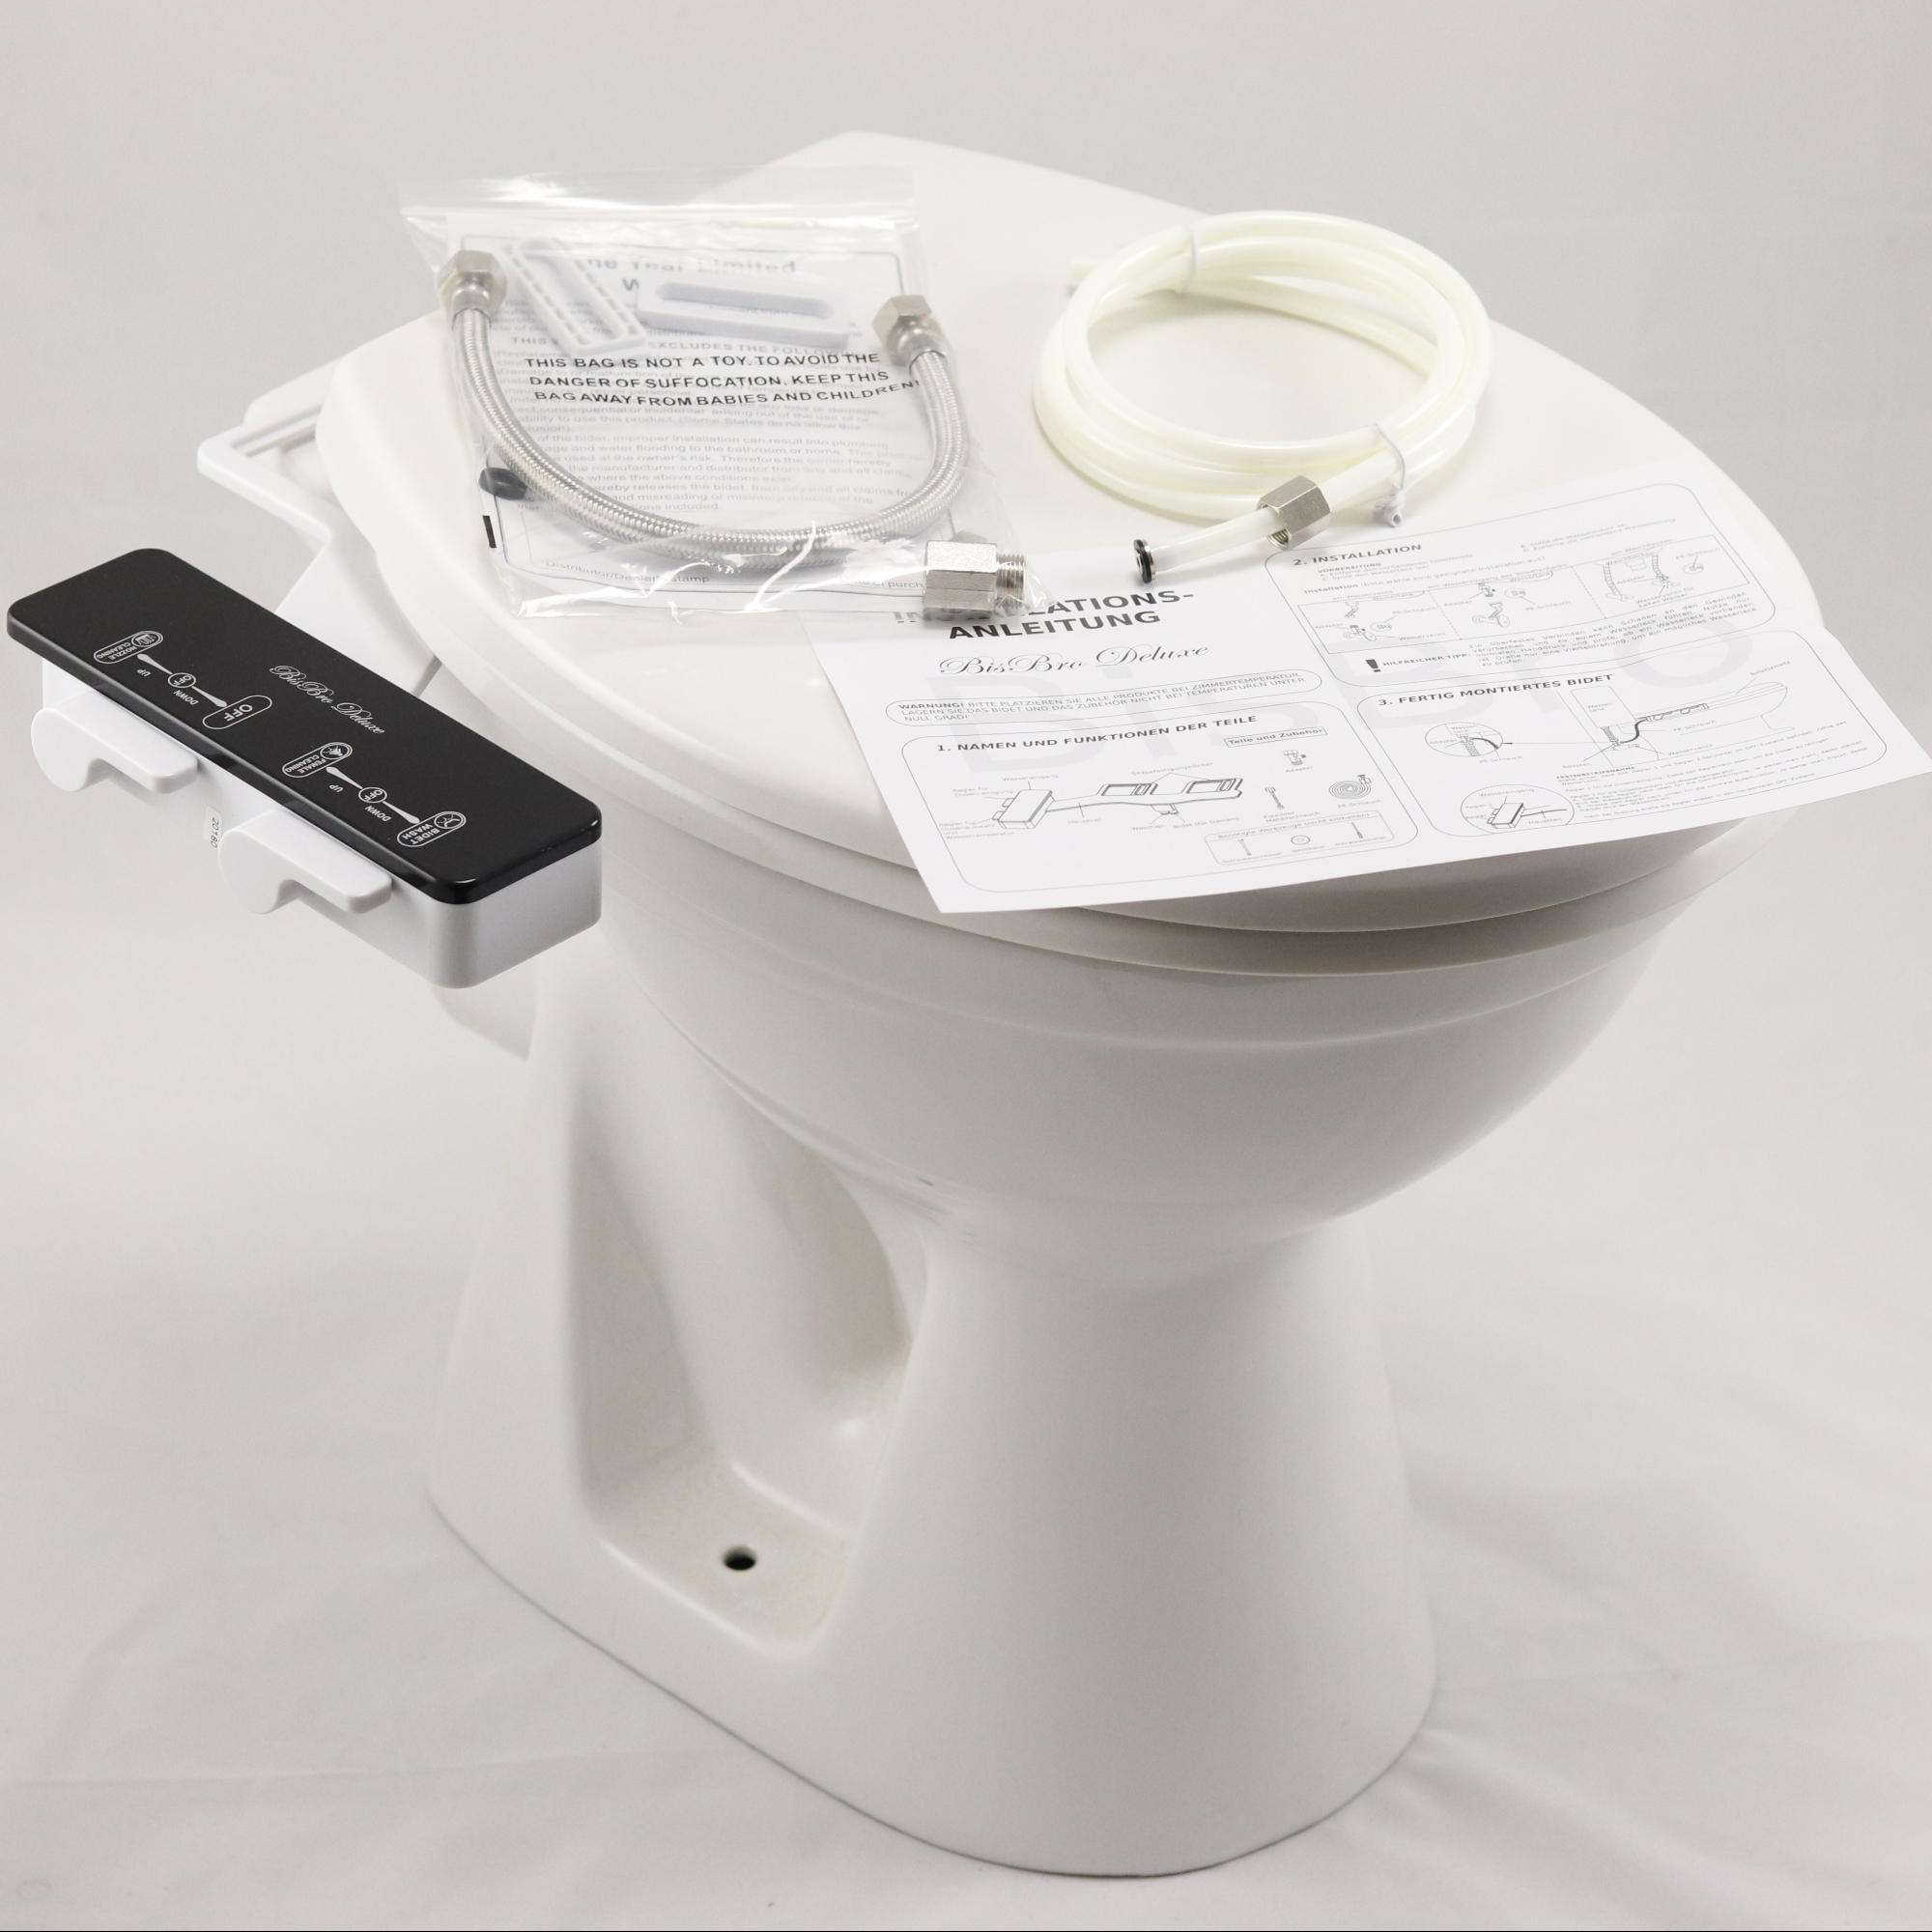 Dusch WC Taharet Taharat Aufsatz für Toilette Intimdusche BisBro Deluxe Bidet 